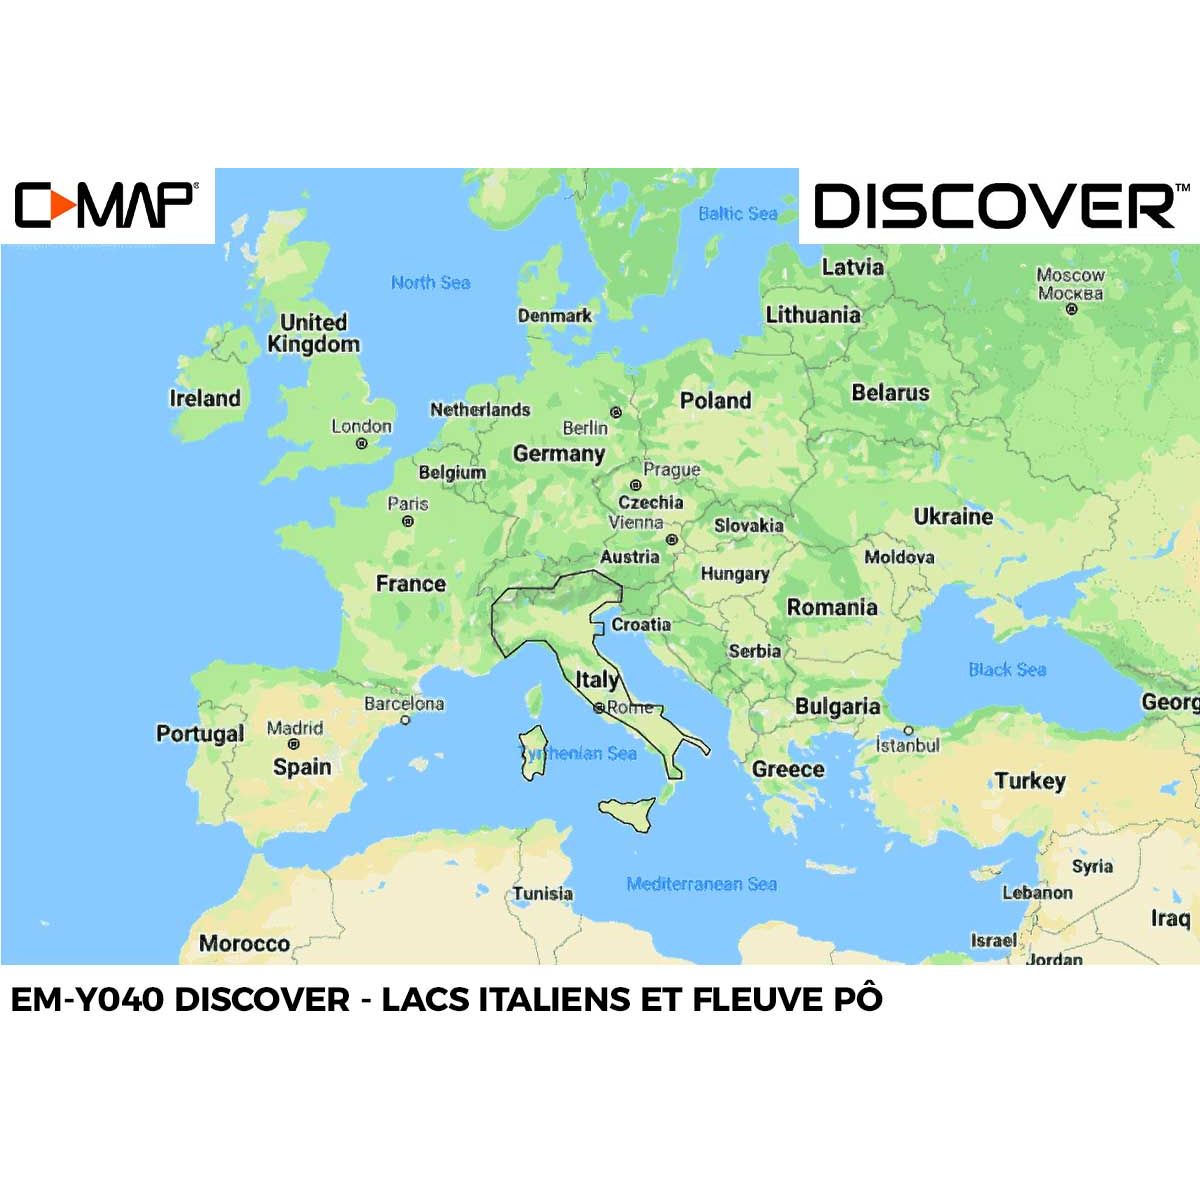 EM-Y040-MS : Lacs italiens et fleuve Pô - Carte C-MAP DISCOVER - Zone EUROPE du Sud